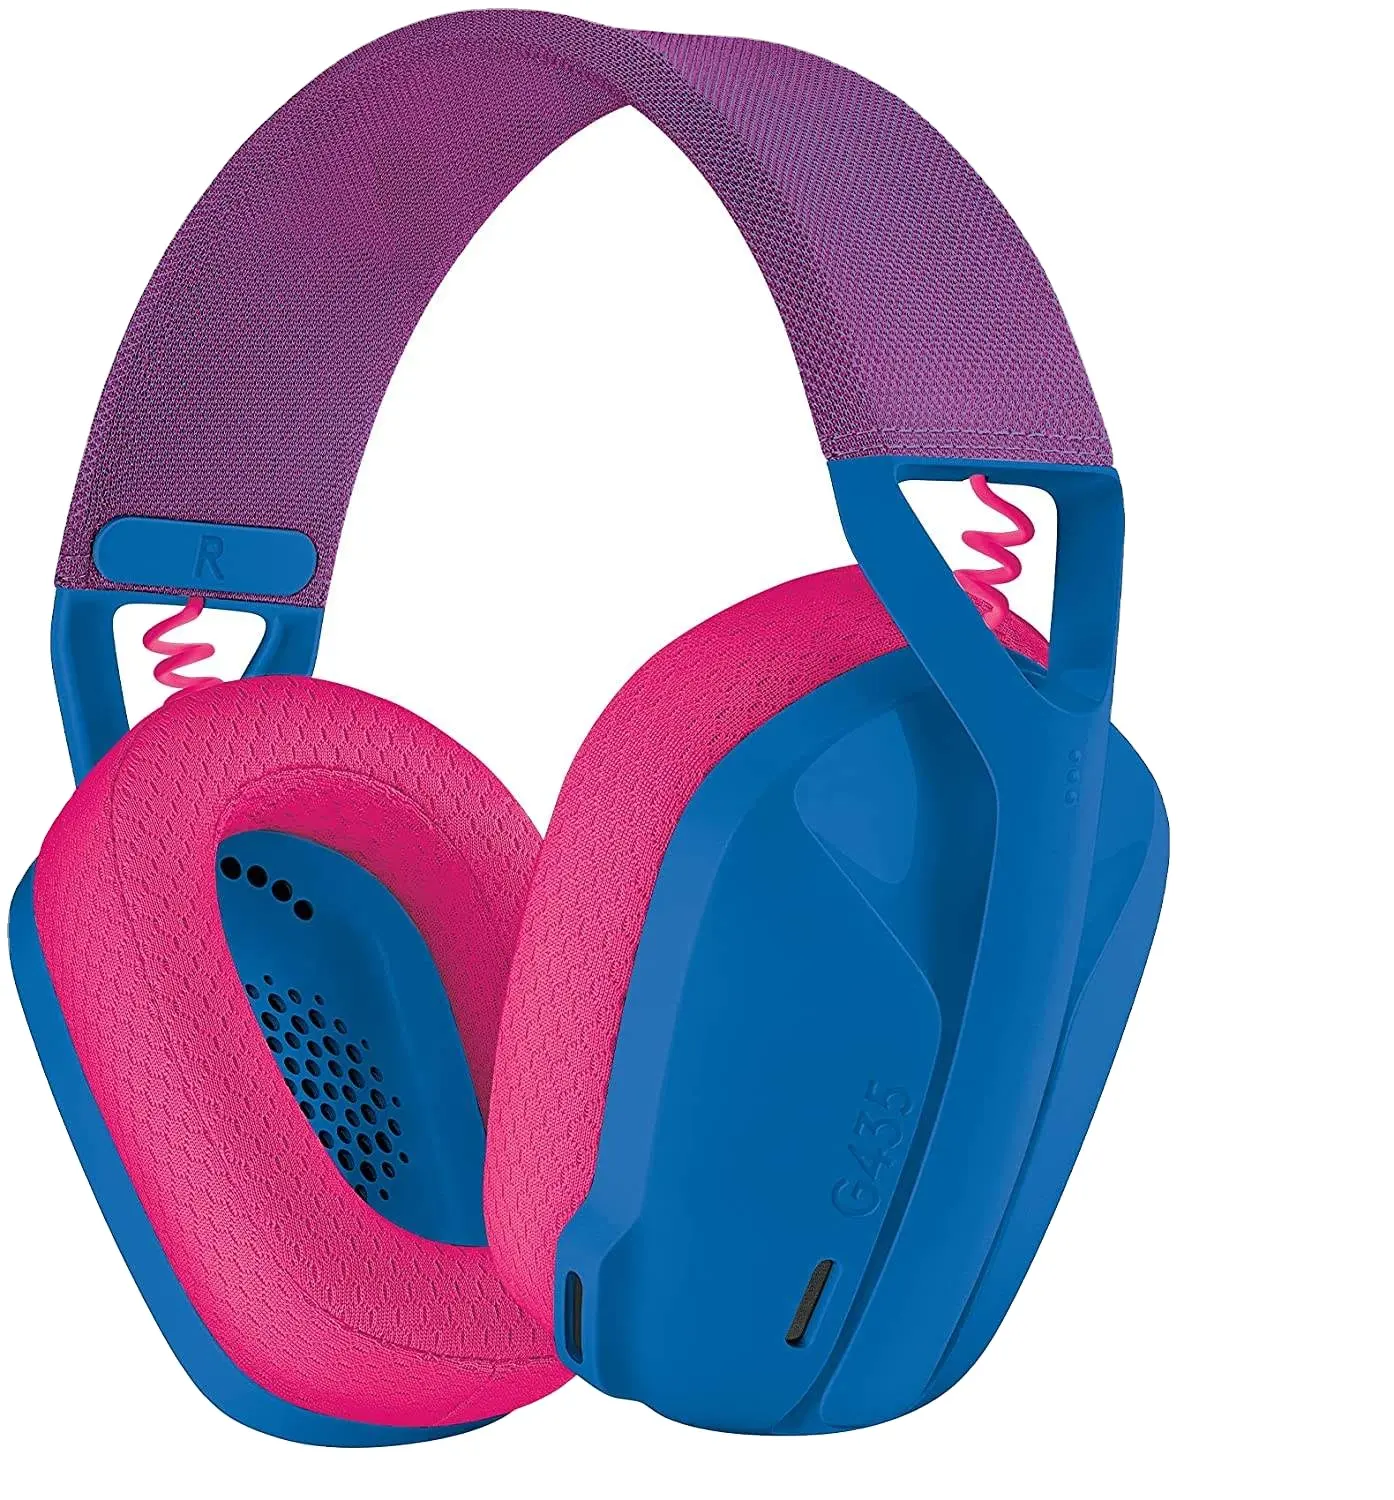 Logitech G435 Wireless-Kopfhörer Beliebte tragbare drahtlose Musik-Headset-Geräusch unterdrückung für Kopfhörer